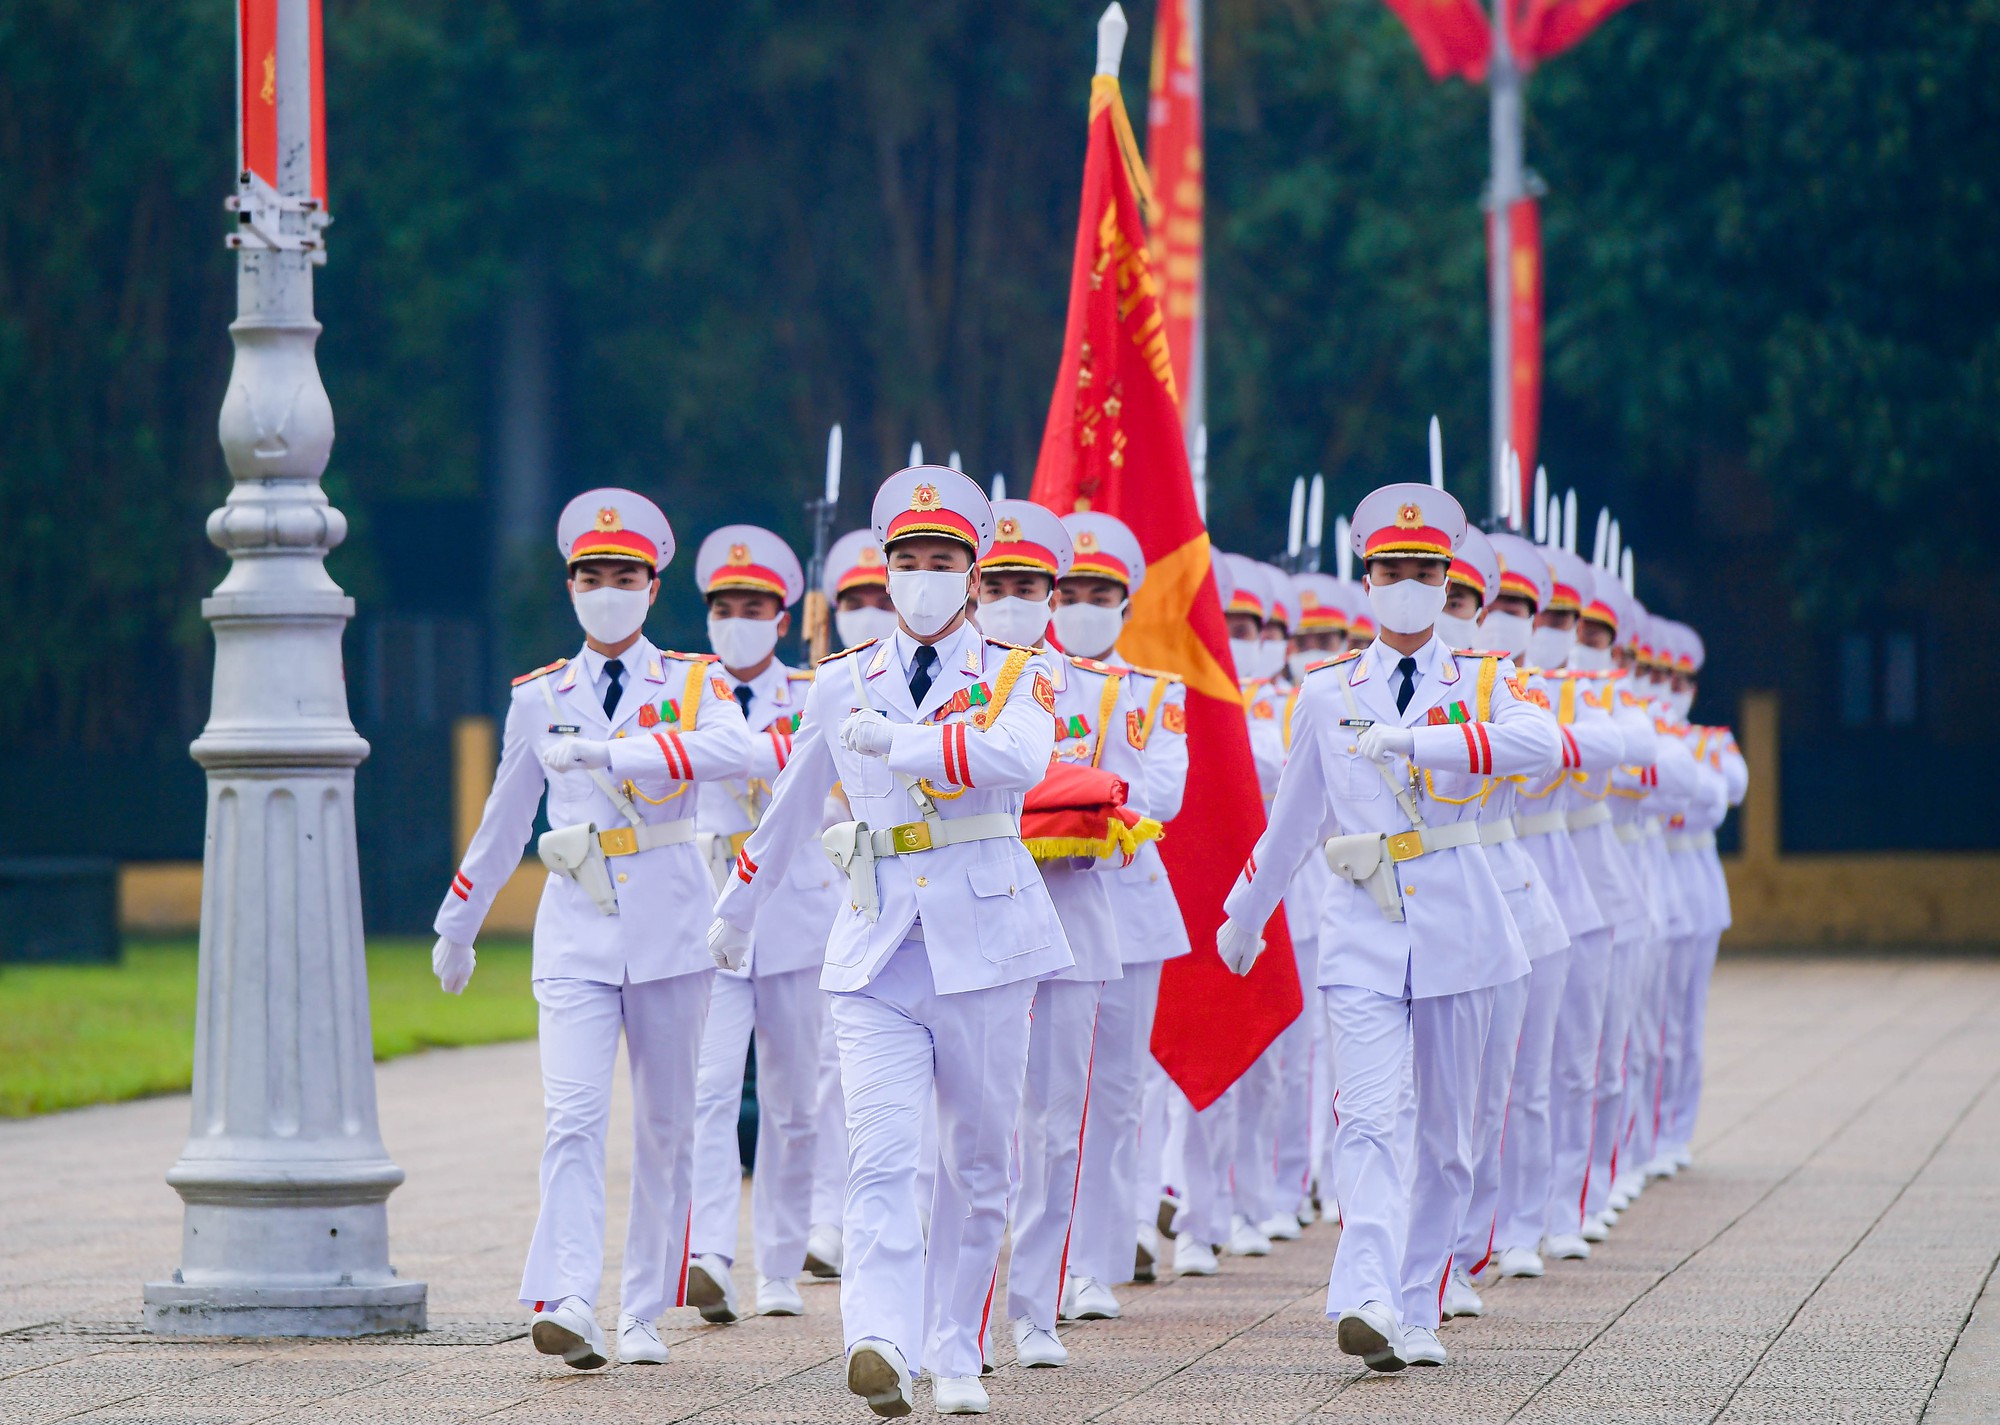 Nghi lễ Thượng cờ: Nghi lễ Thượng cờ là một trong những hoạt động truyền thống hằng năm của Dân tộc Việt Nam, với mục đích tôn vinh các anh hùng liệt sĩ đã hy sinh vì độc lập, tự do và sự nghiệp cách mạng của dân tộc. Hãy xem qua những hình ảnh lễ hội này để cảm nhận chân thật giá trị tinh thần của người Việt Nam.